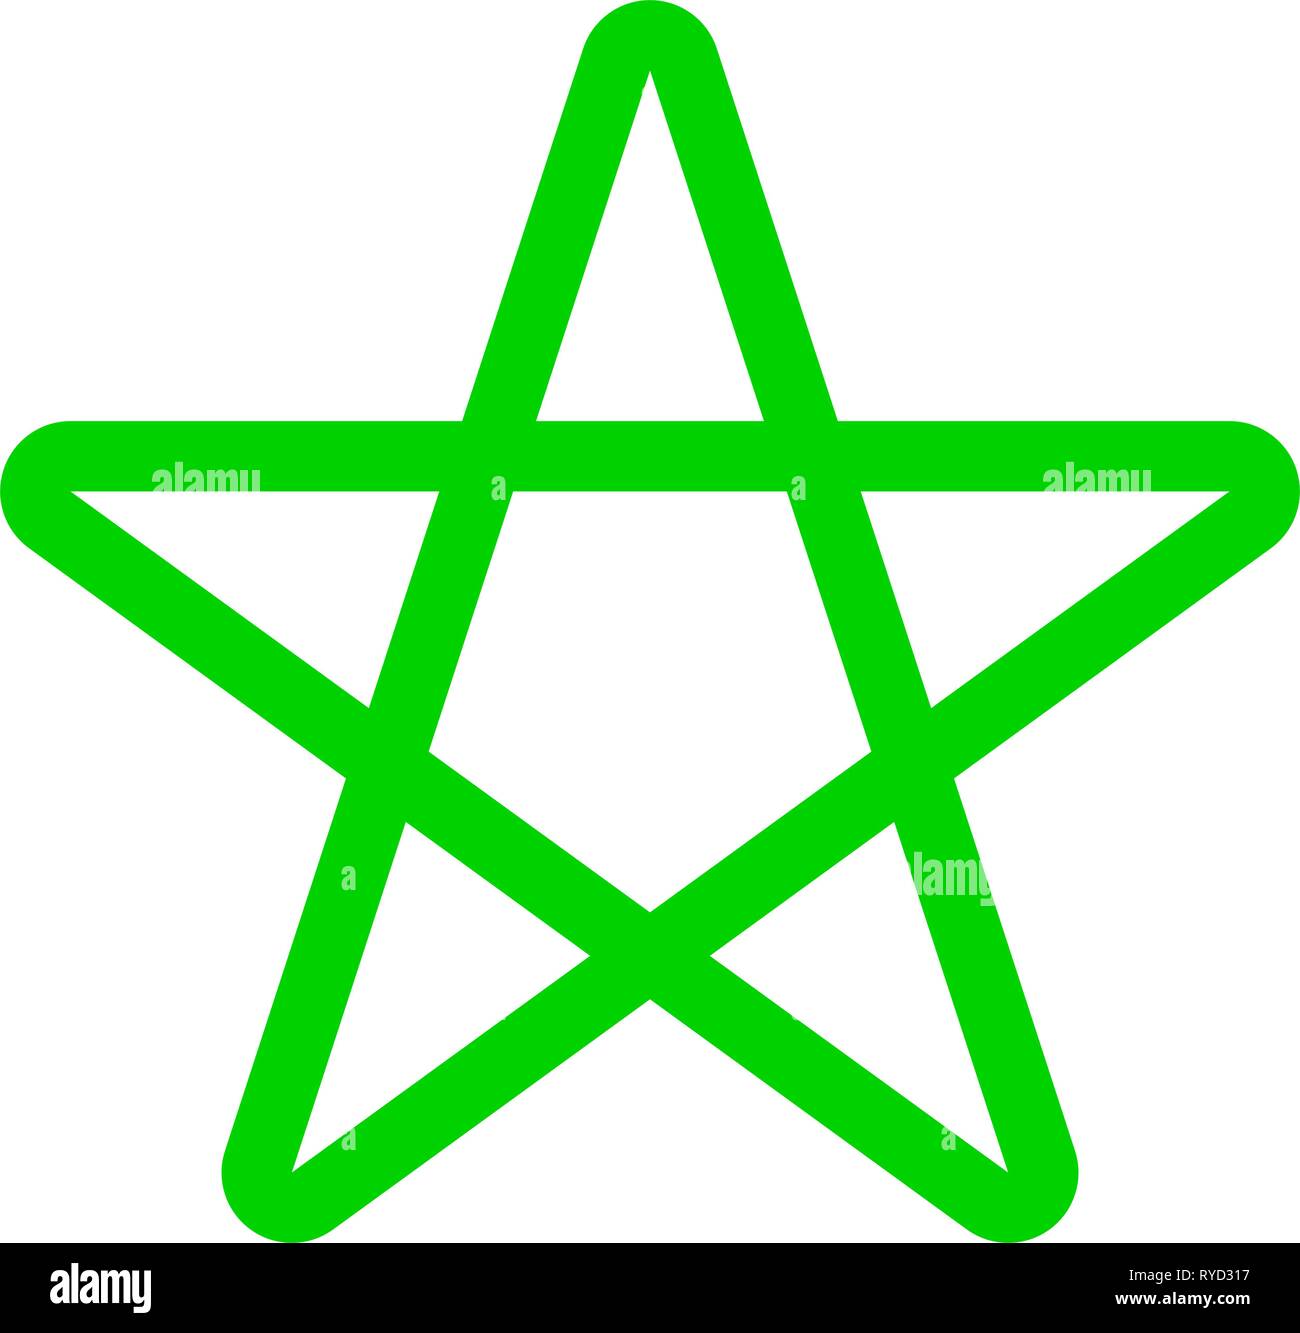 Biểu tượng outline ngôi sao năm cánh thật đẹp và đơn giản. Bạn có thể sử dụng nó để tạo ra những thiết kế độc đáo và đầy sáng tạo. Hãy xem qua bức hình này và khám phá những ý tưởng tuyệt vời mà nó mang lại.